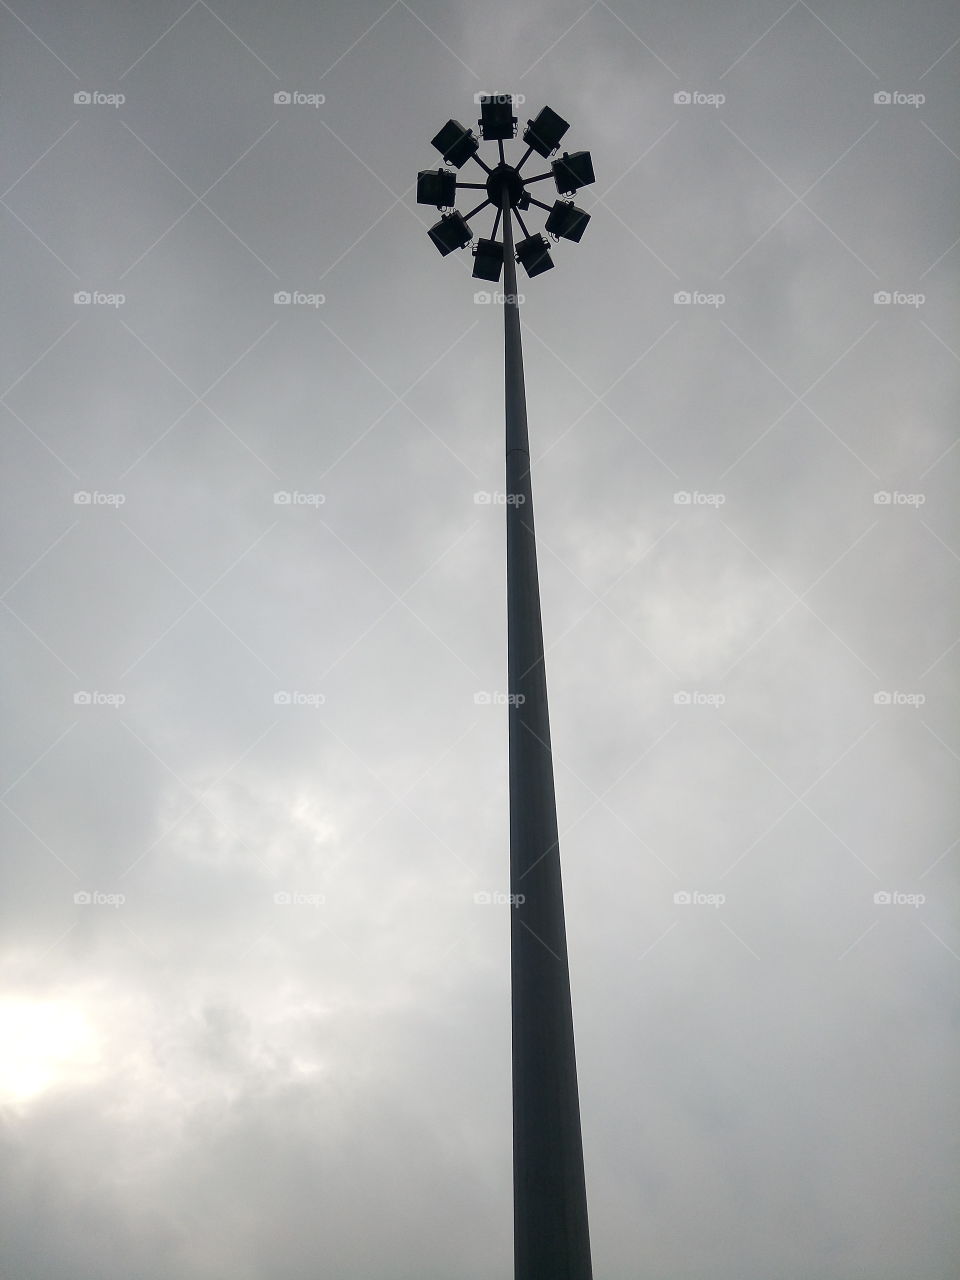 Light tower